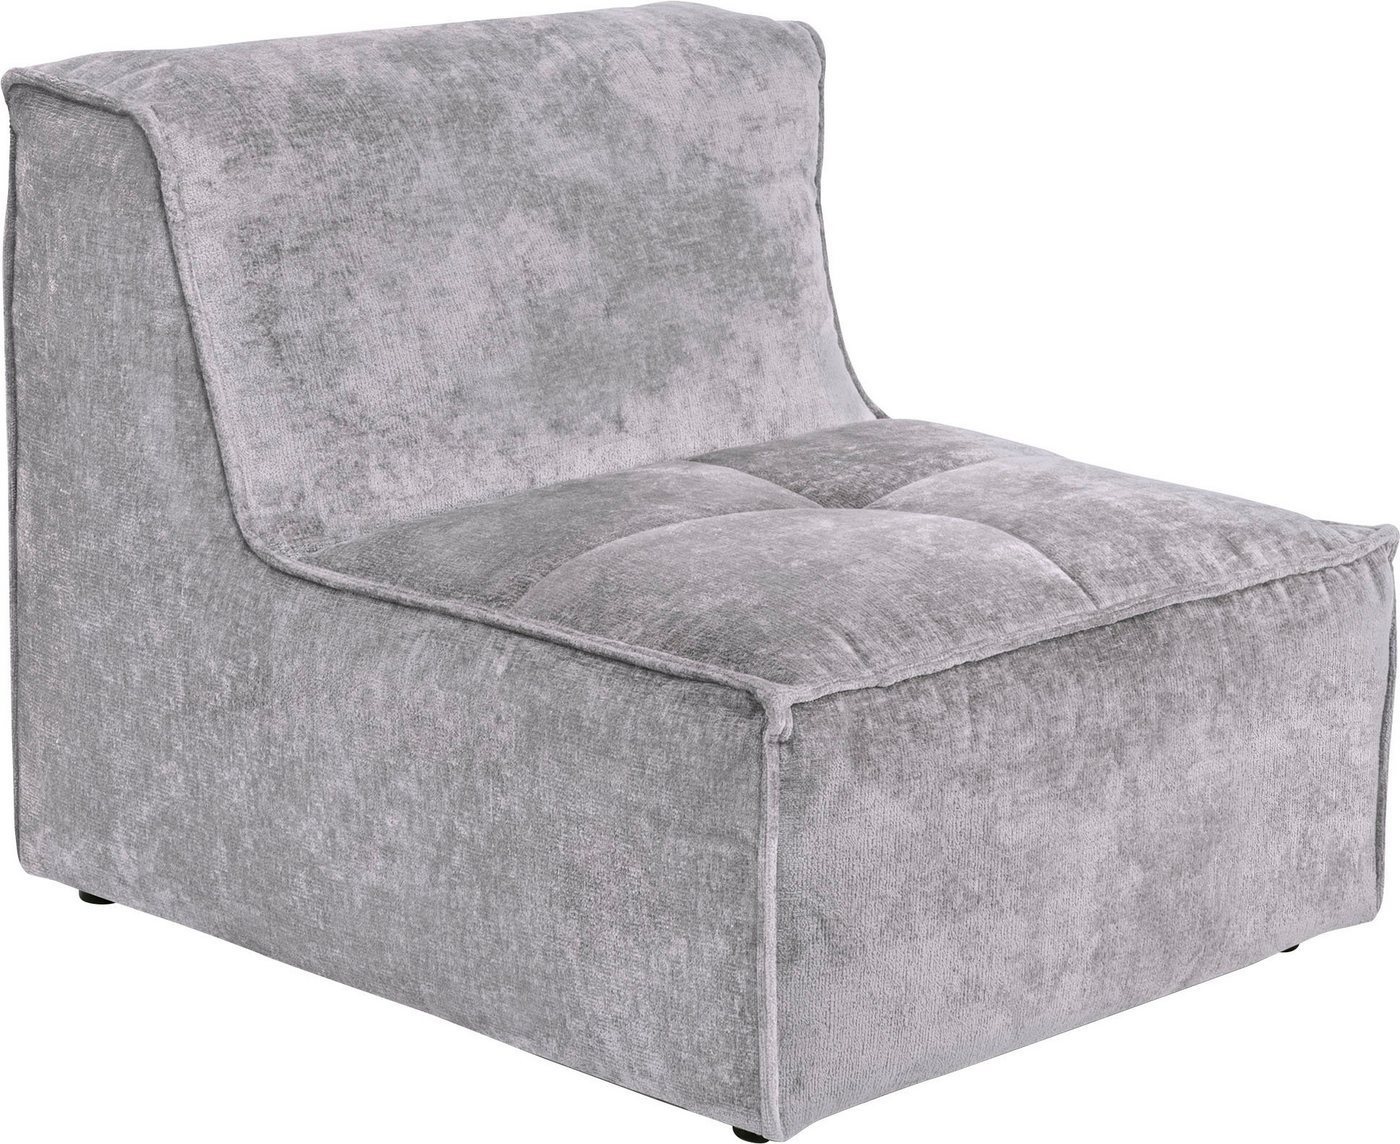 RAUM.ID Sofa-Mittelelement Monolid (1 St), als Modul oder separat verwendbar, für individuelle Zusammenstellung von RAUM.ID